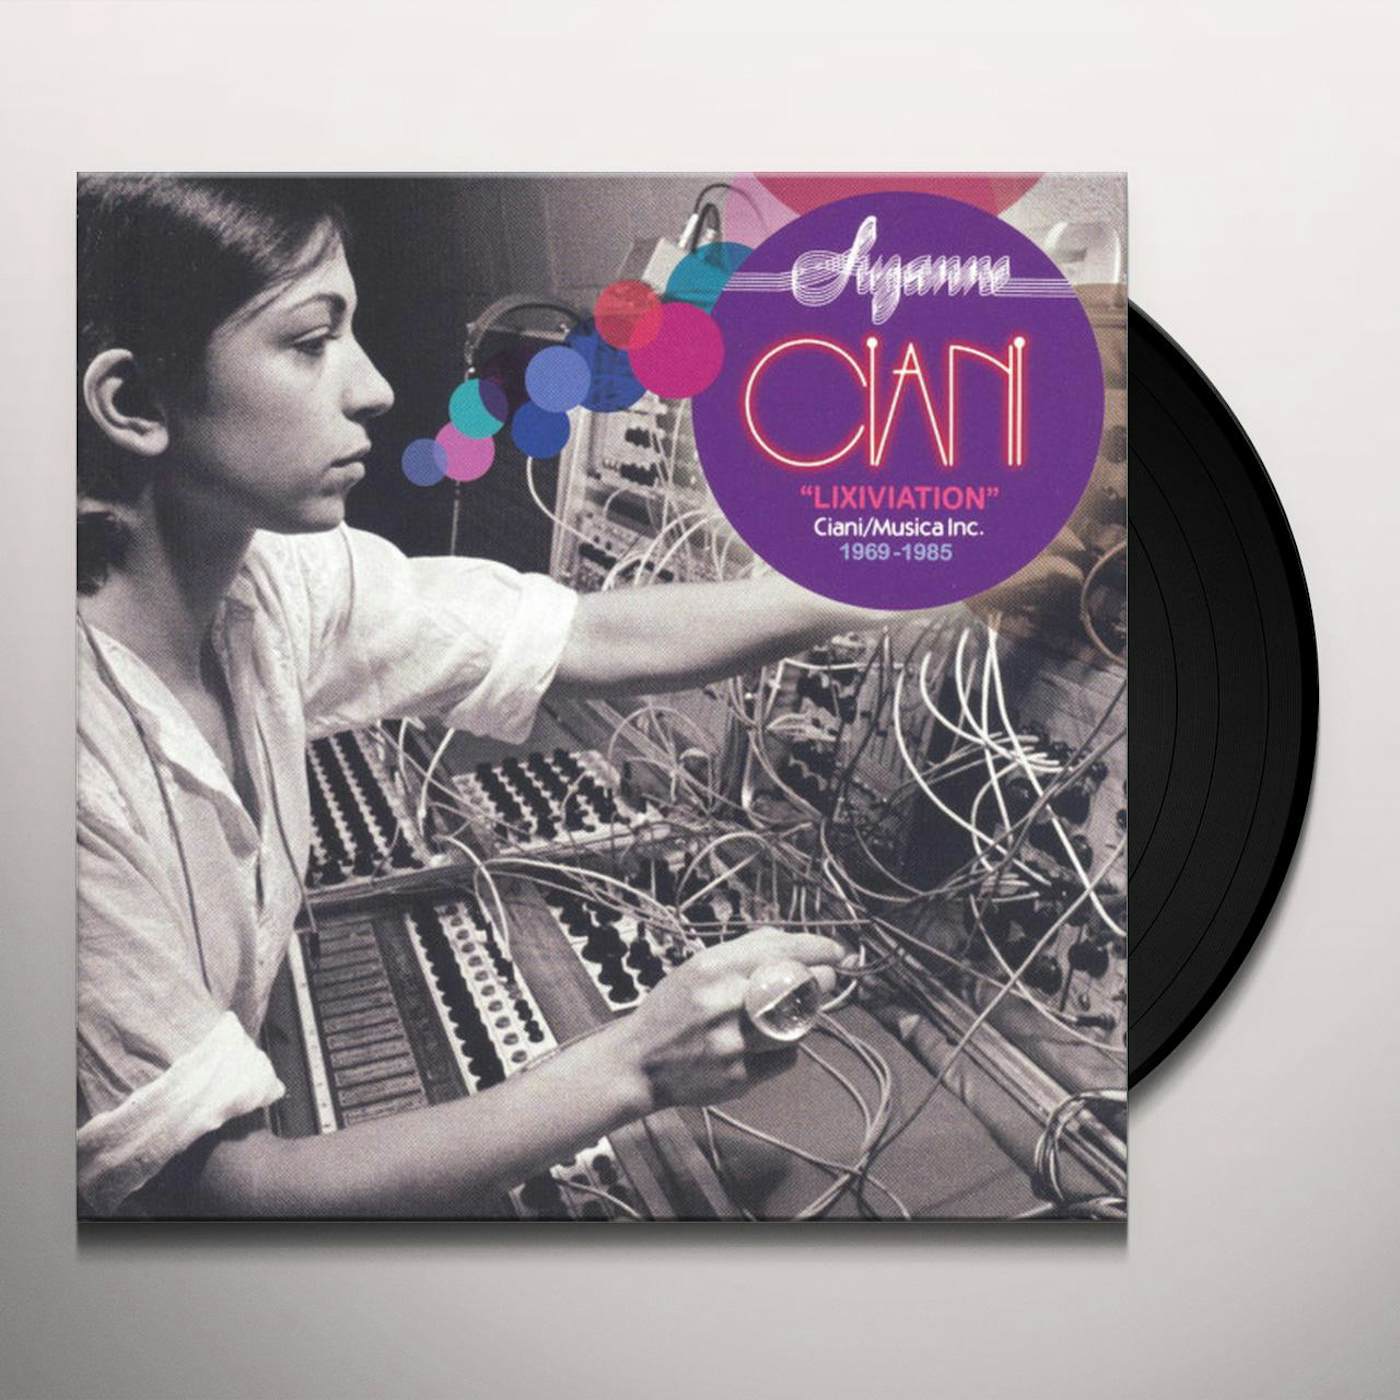 Suzanne Ciani Lixiviation: Ciani/Musica Inc. 1969-1985 Vinyl Record